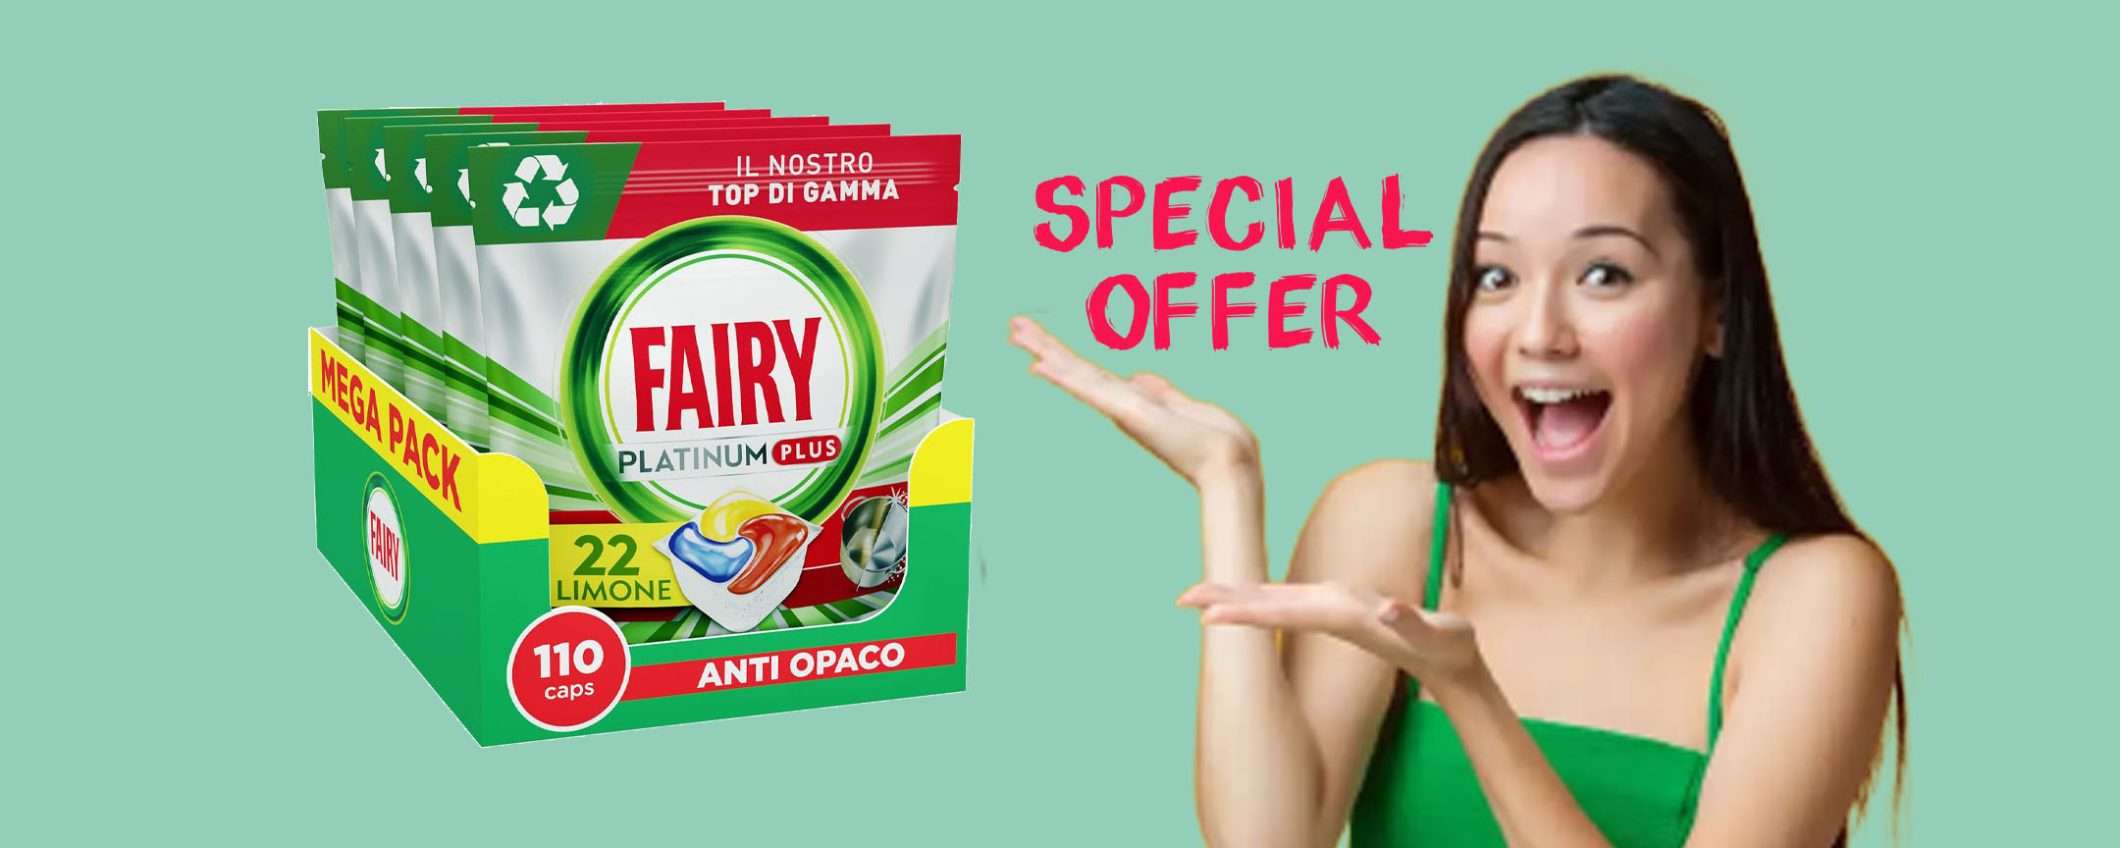 Fairy Platinum 110 pastiglie per lavastoviglie: sconto BOMBA su Amazon